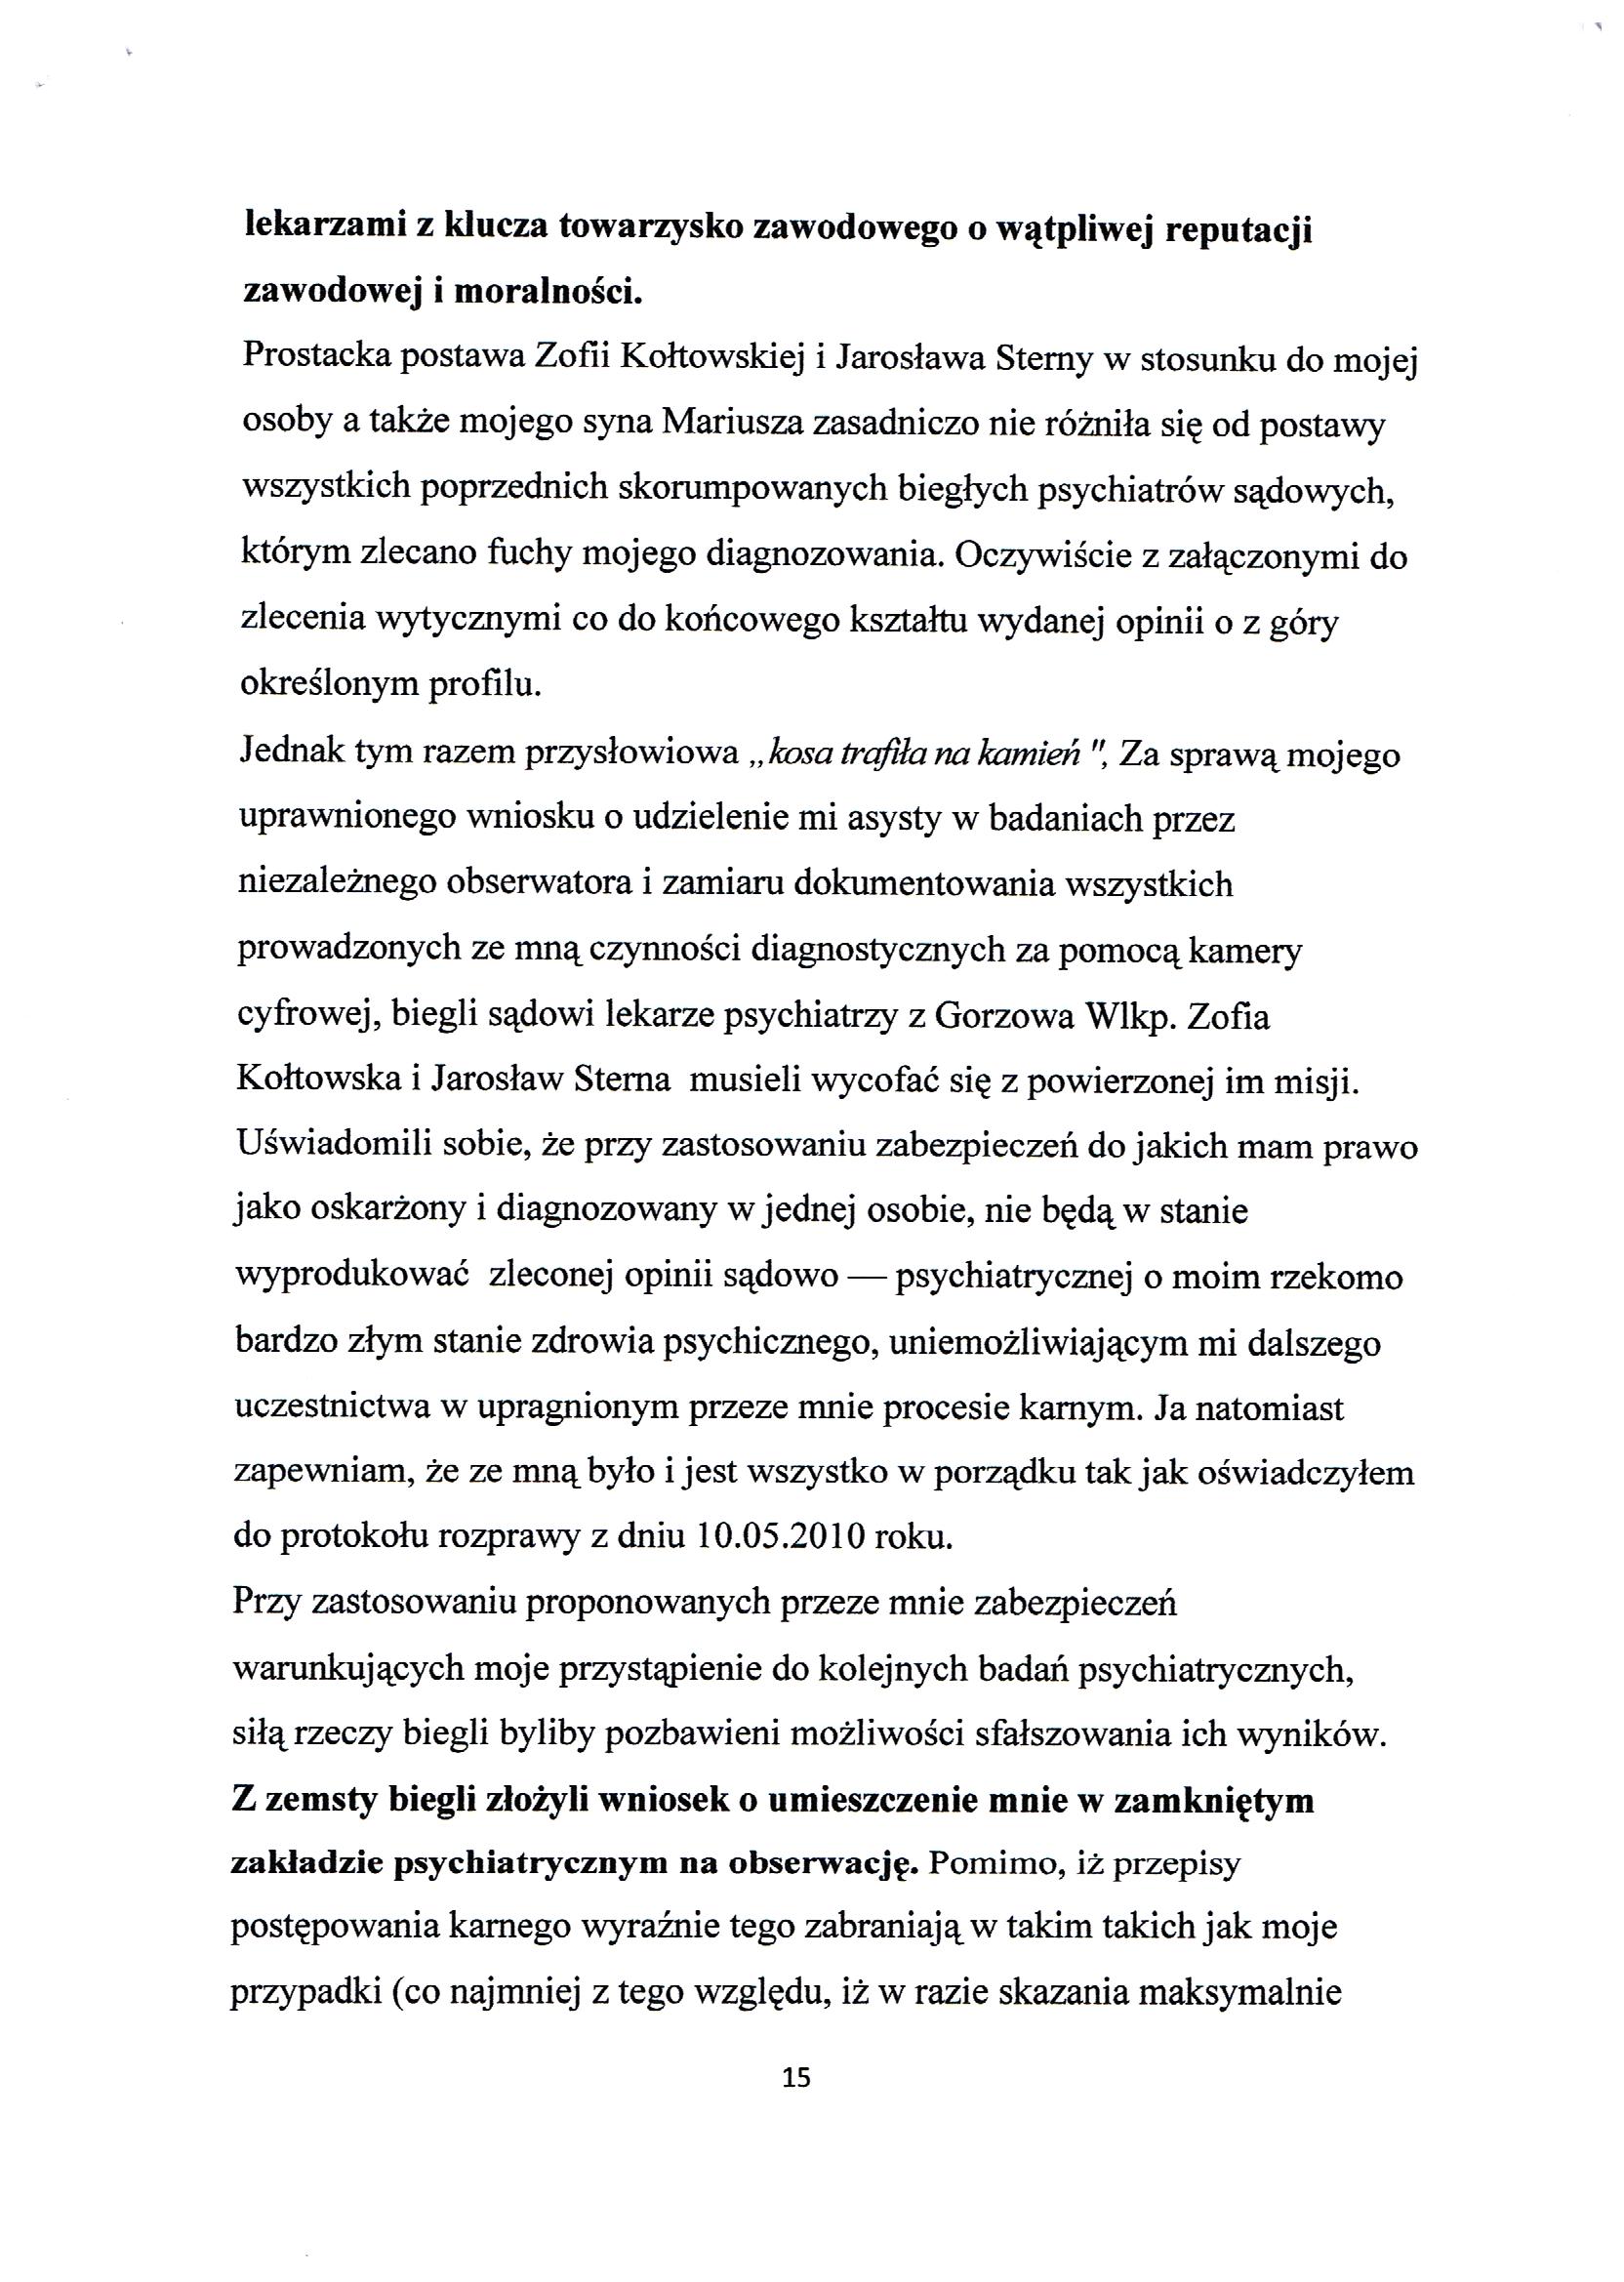 Apelacja Krzyształowski skan 015